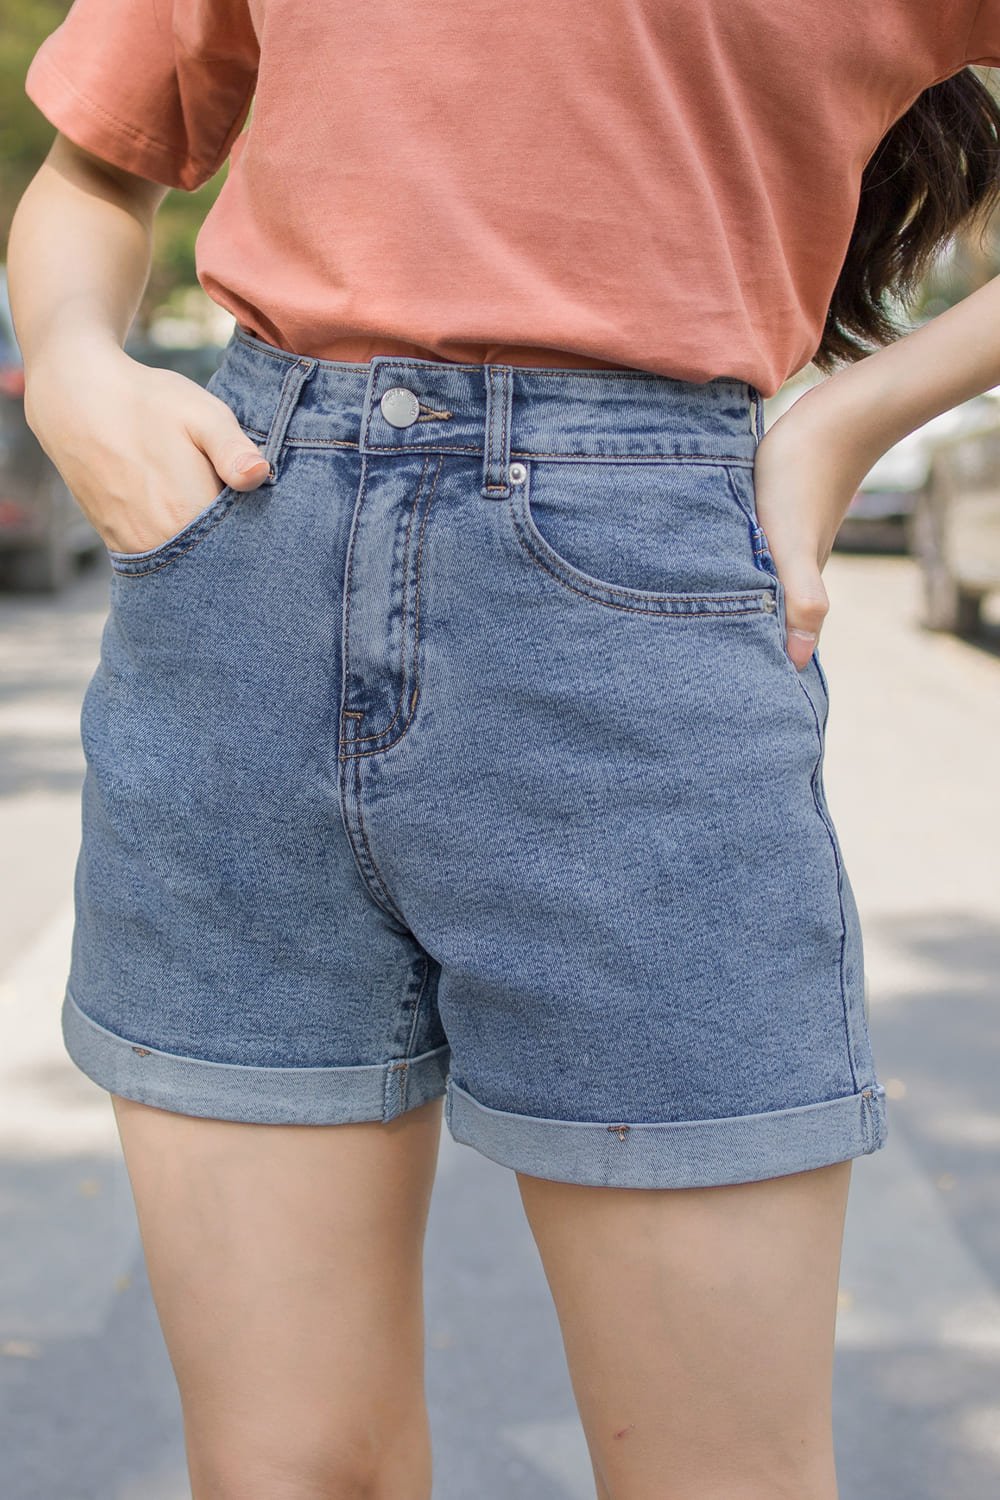 quần jean short